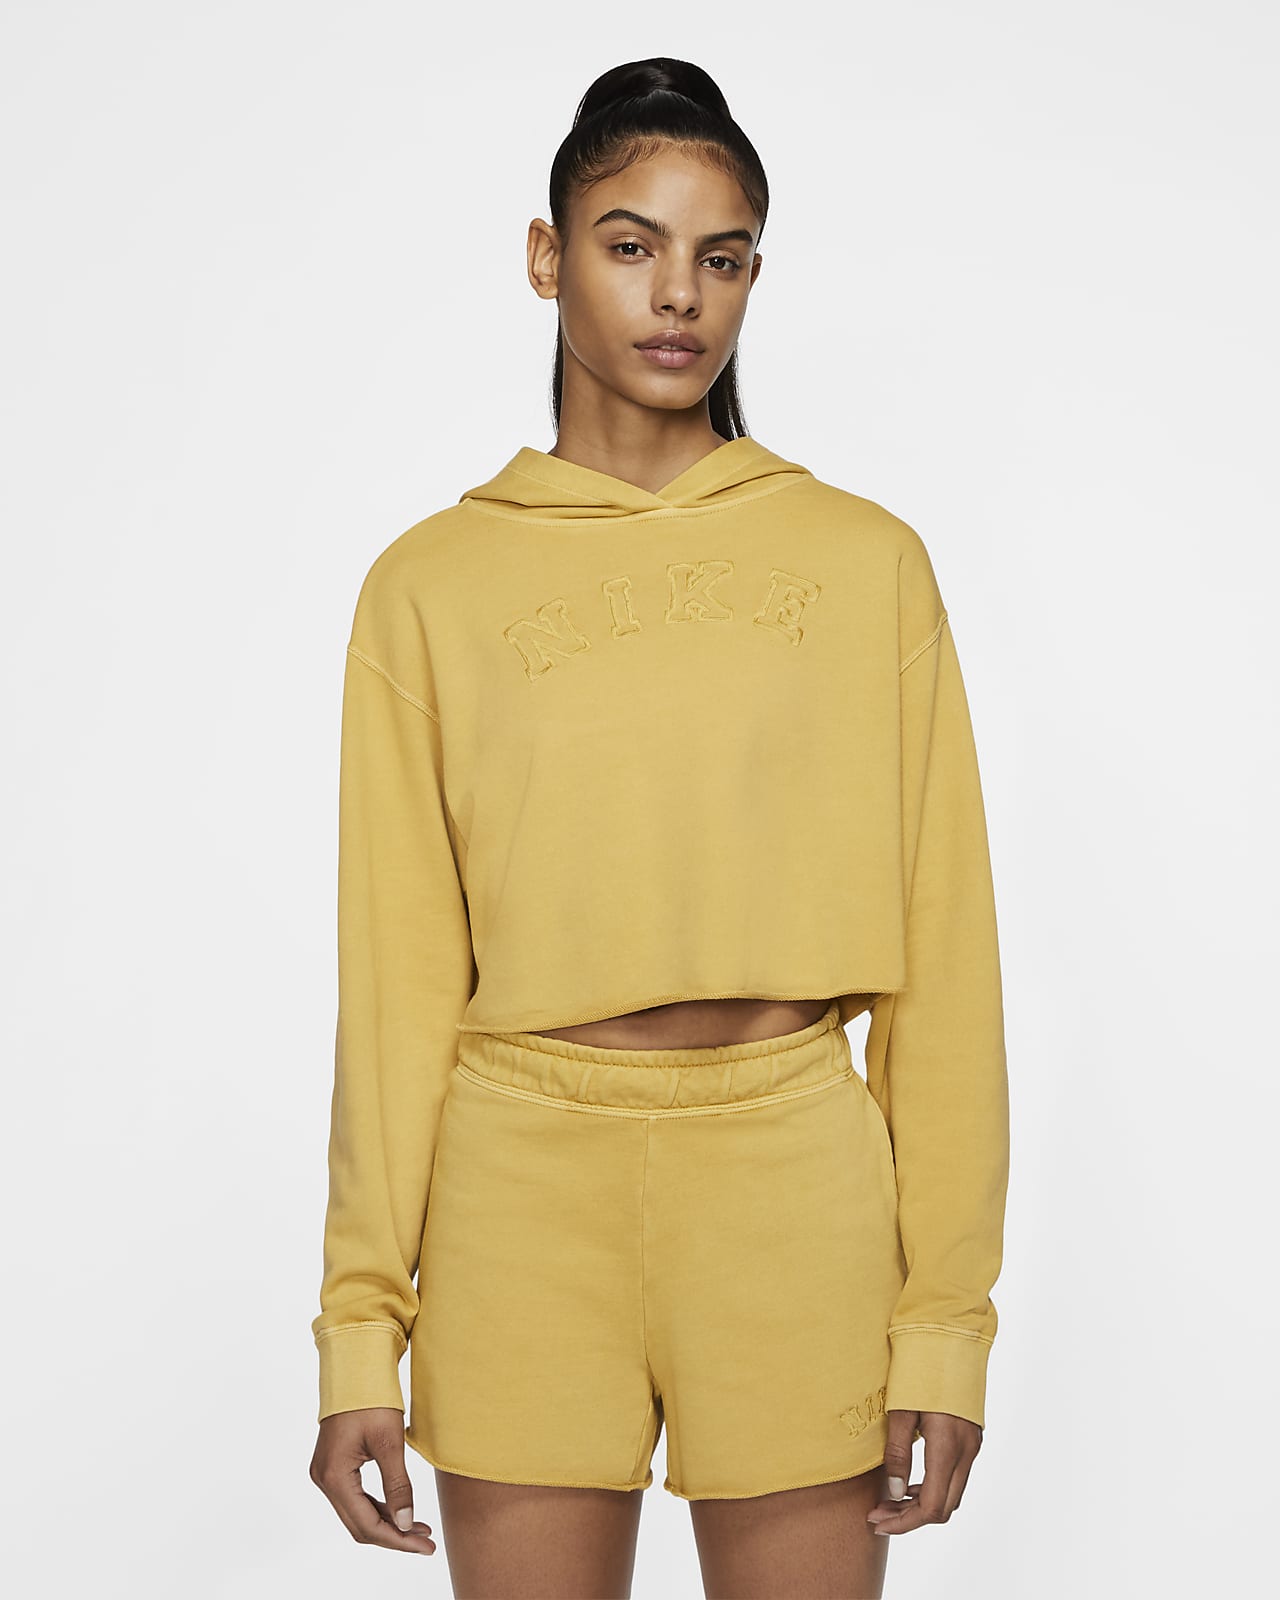 womens yellow nike hoodie